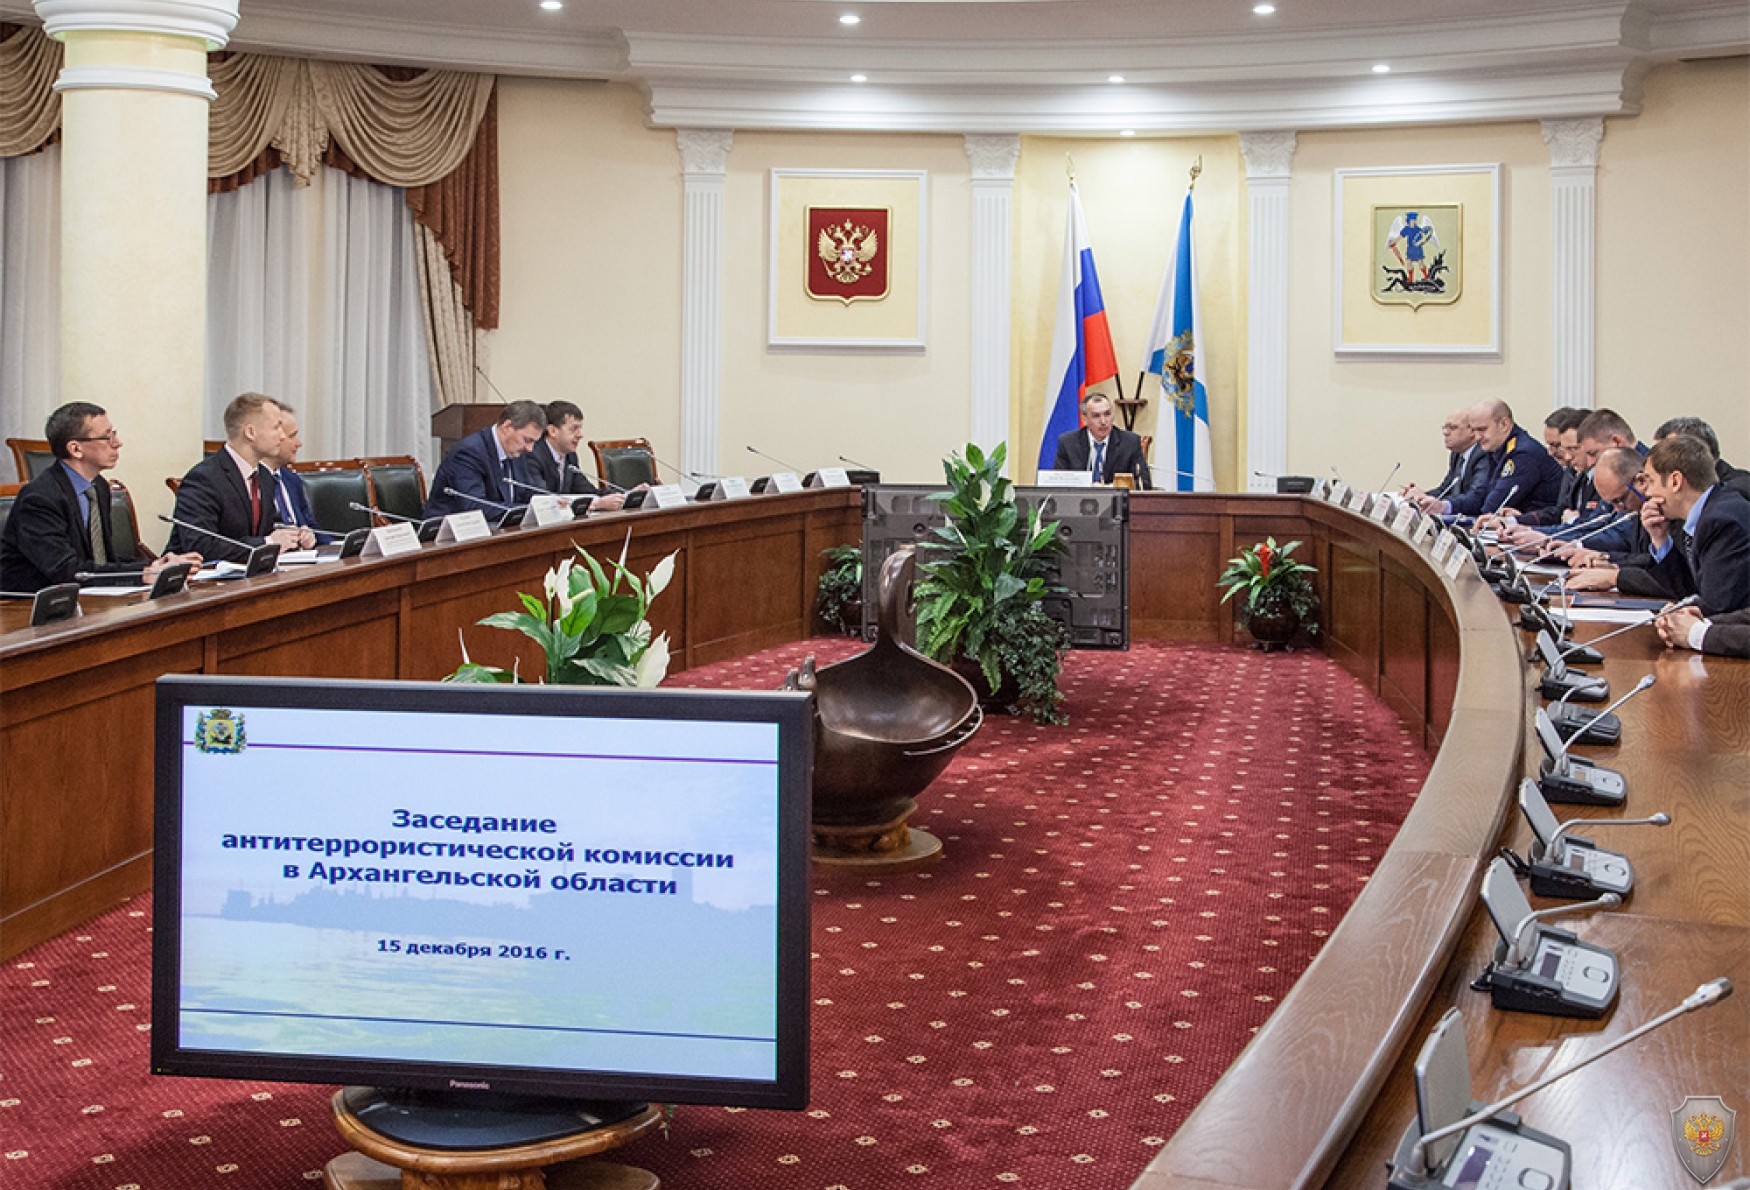 Открытие заседания антитеррористической комиссии в Архангельской области 15 декабря 2016 года 